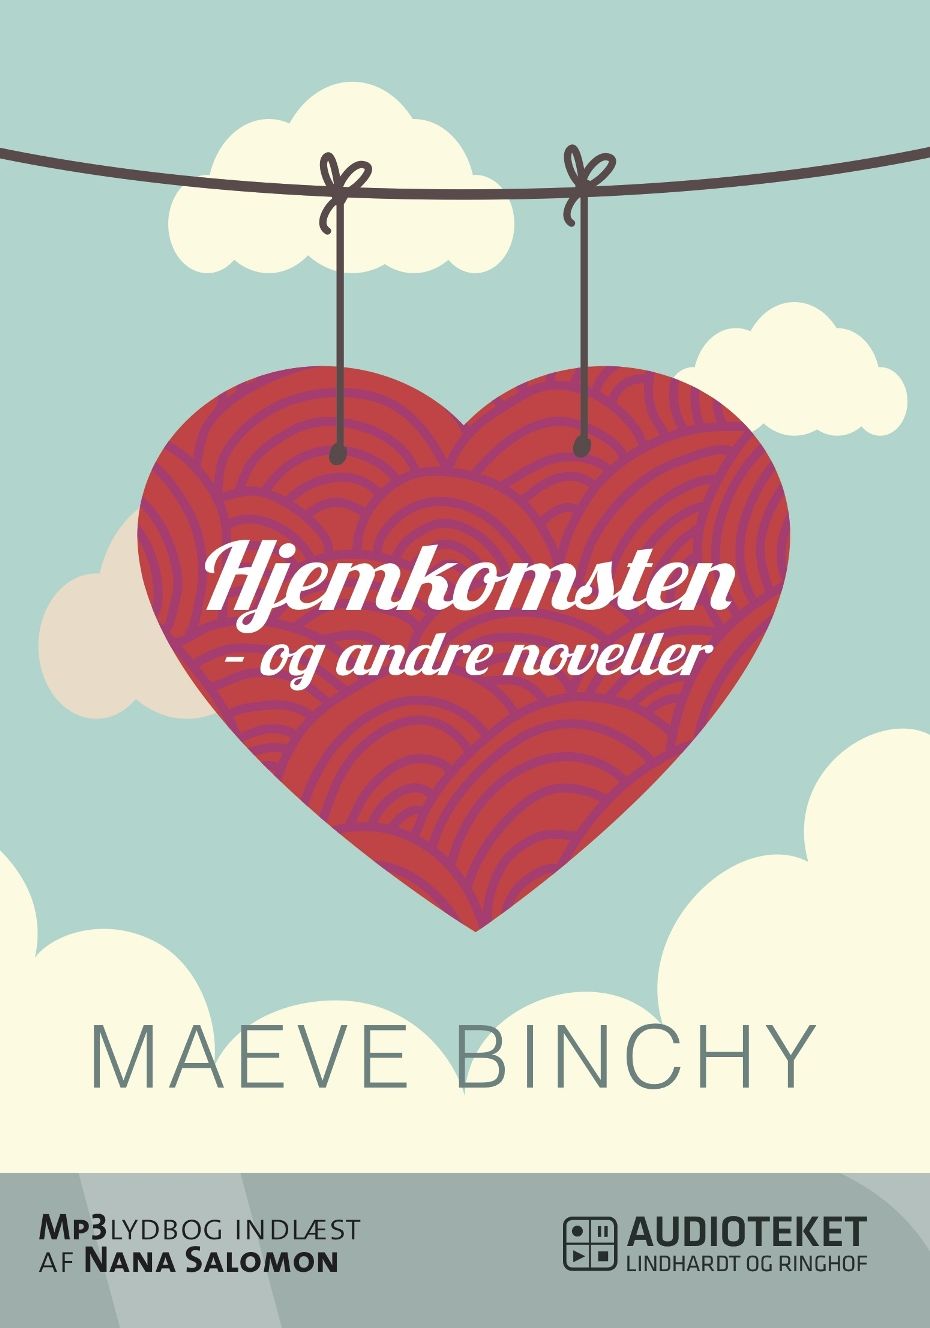 Hjemkomsten - og andre noveller, audiobook by Maeve Binchy